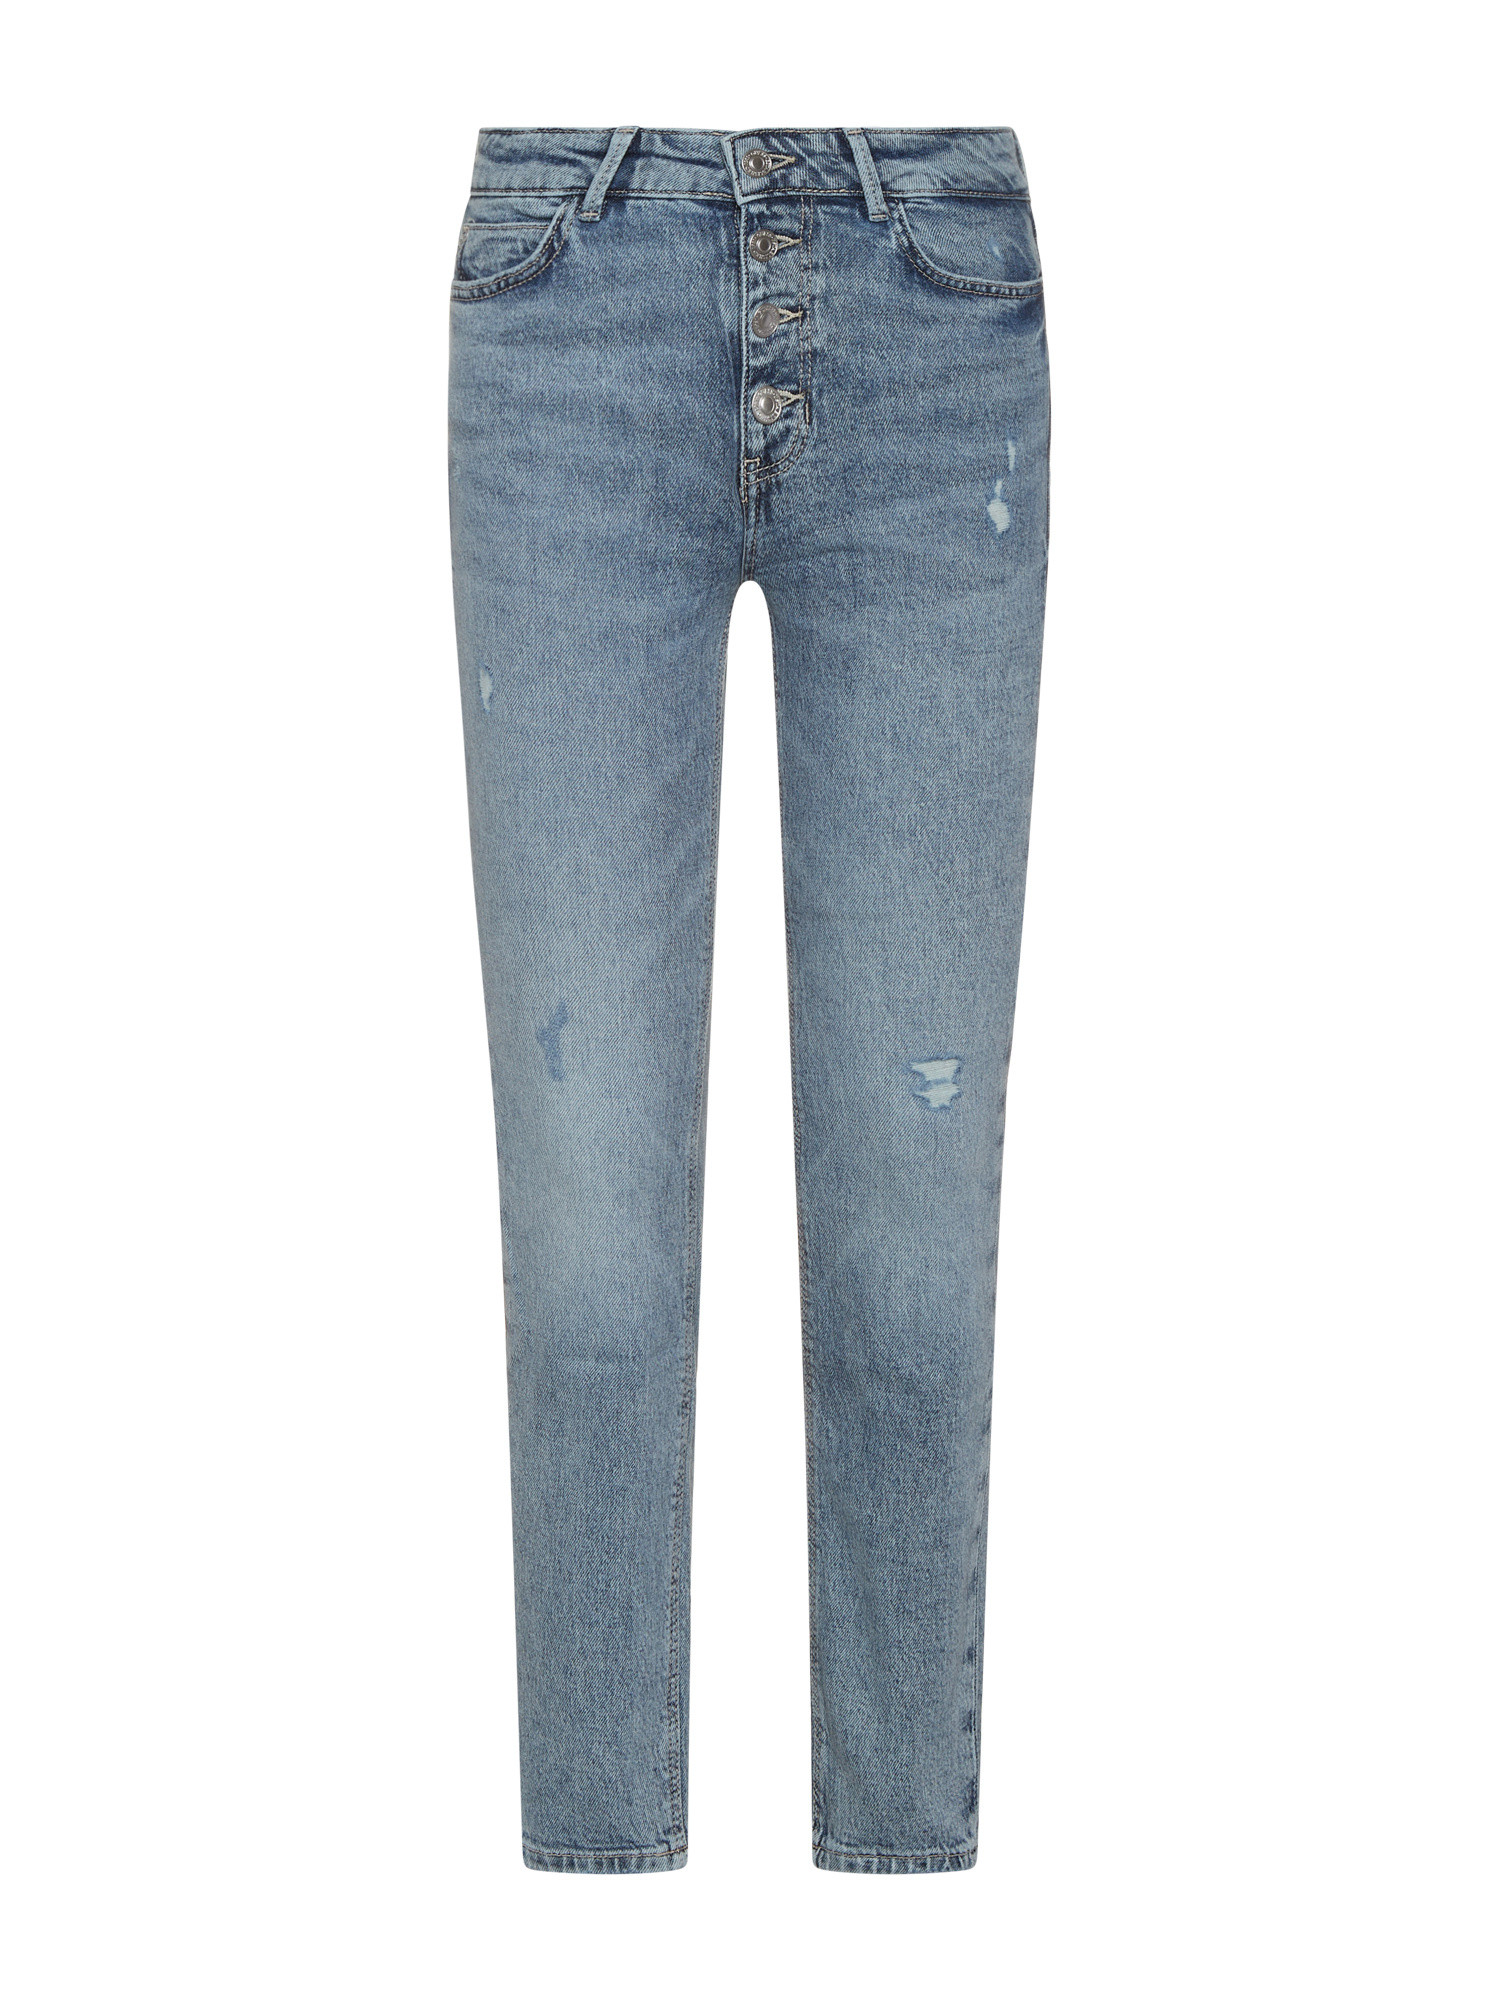 Guess - Five pocket skinny jeans, Light Blue, large image number 0